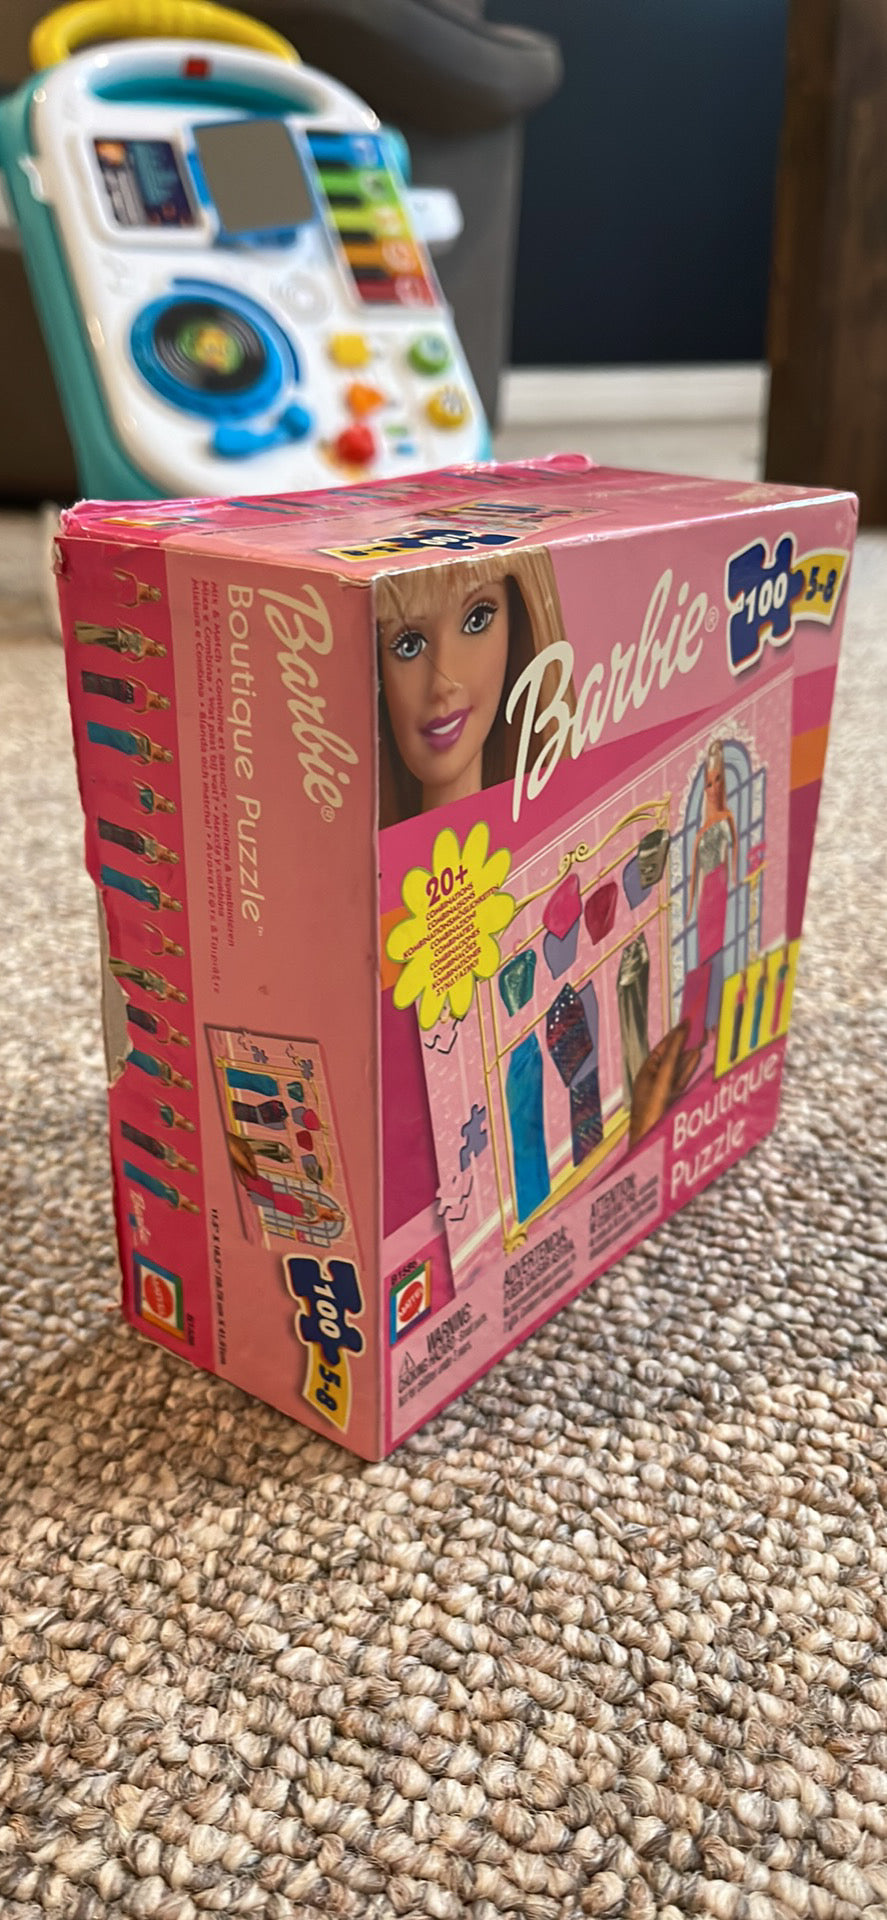 Puzzle 100 pièces XXL : Barbie : Toujours voir le bon côté - N/A - Kiabi -  19.98€